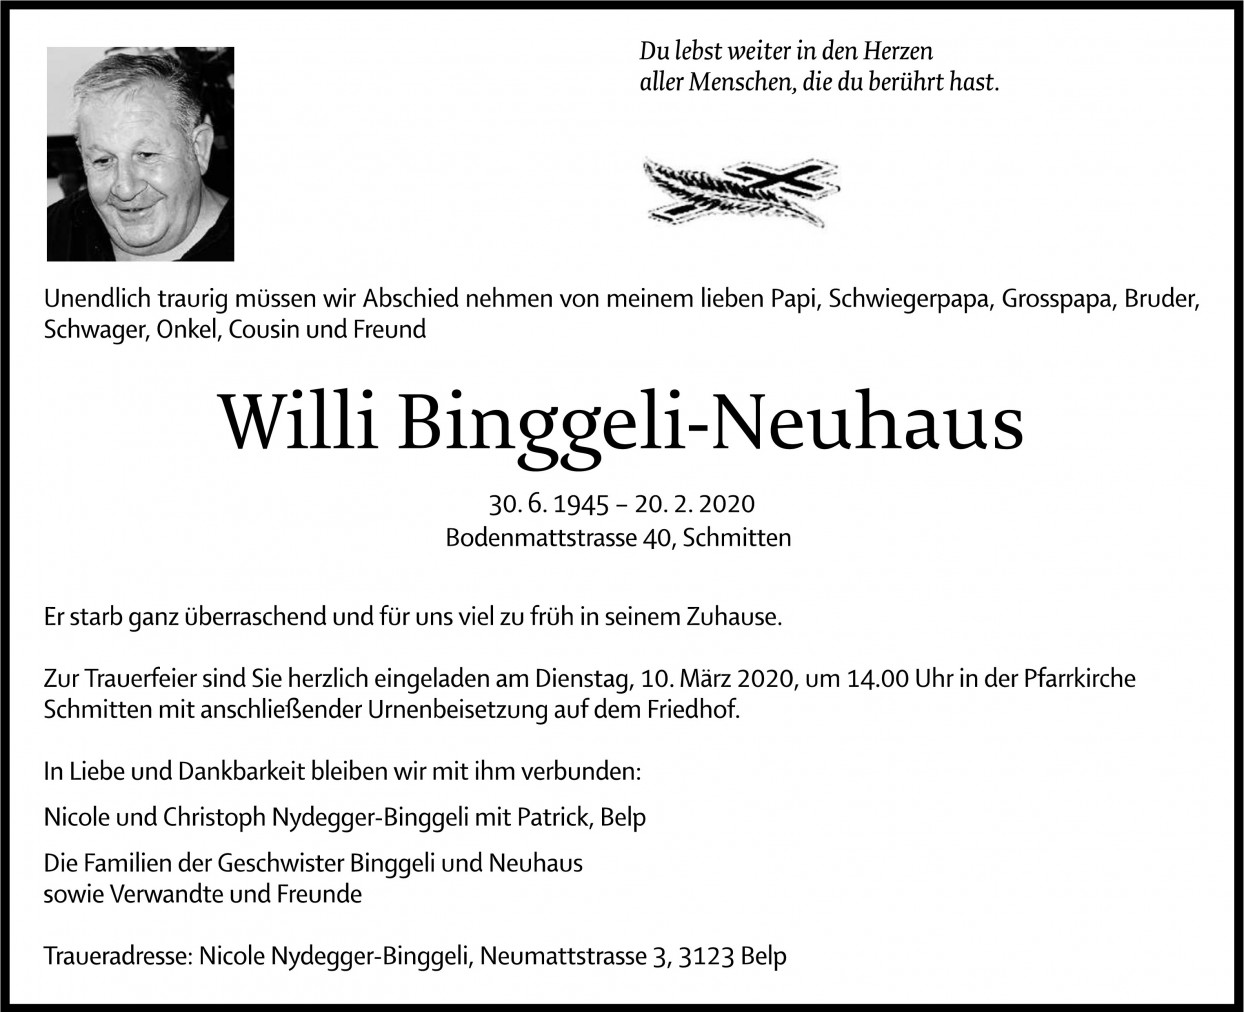 Willi Binggeli-Neuhaus